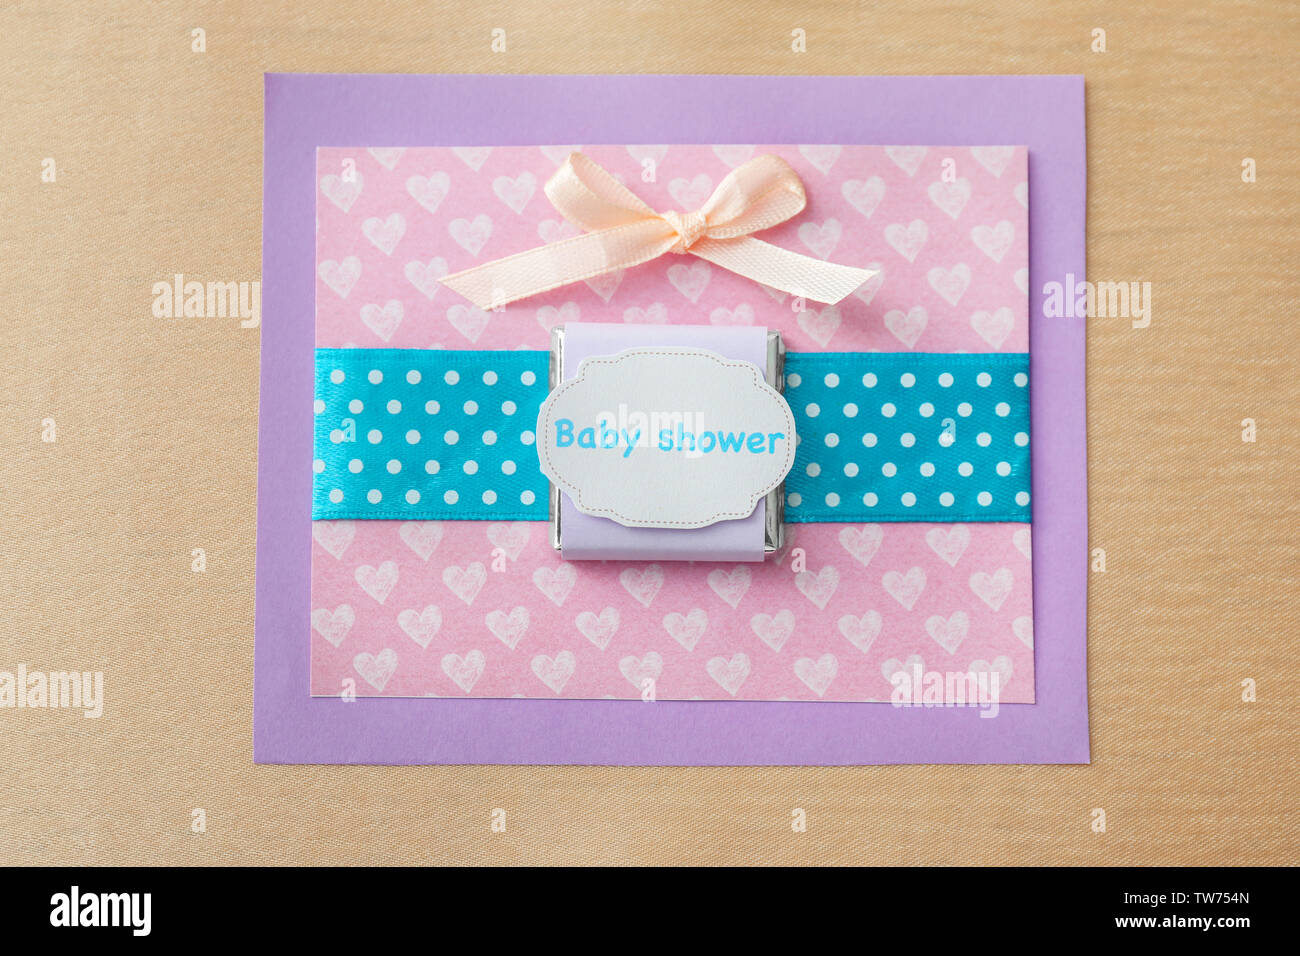 Süße Danke Karte für Baby-dusche auf farbigen Hintergrund Stockfoto